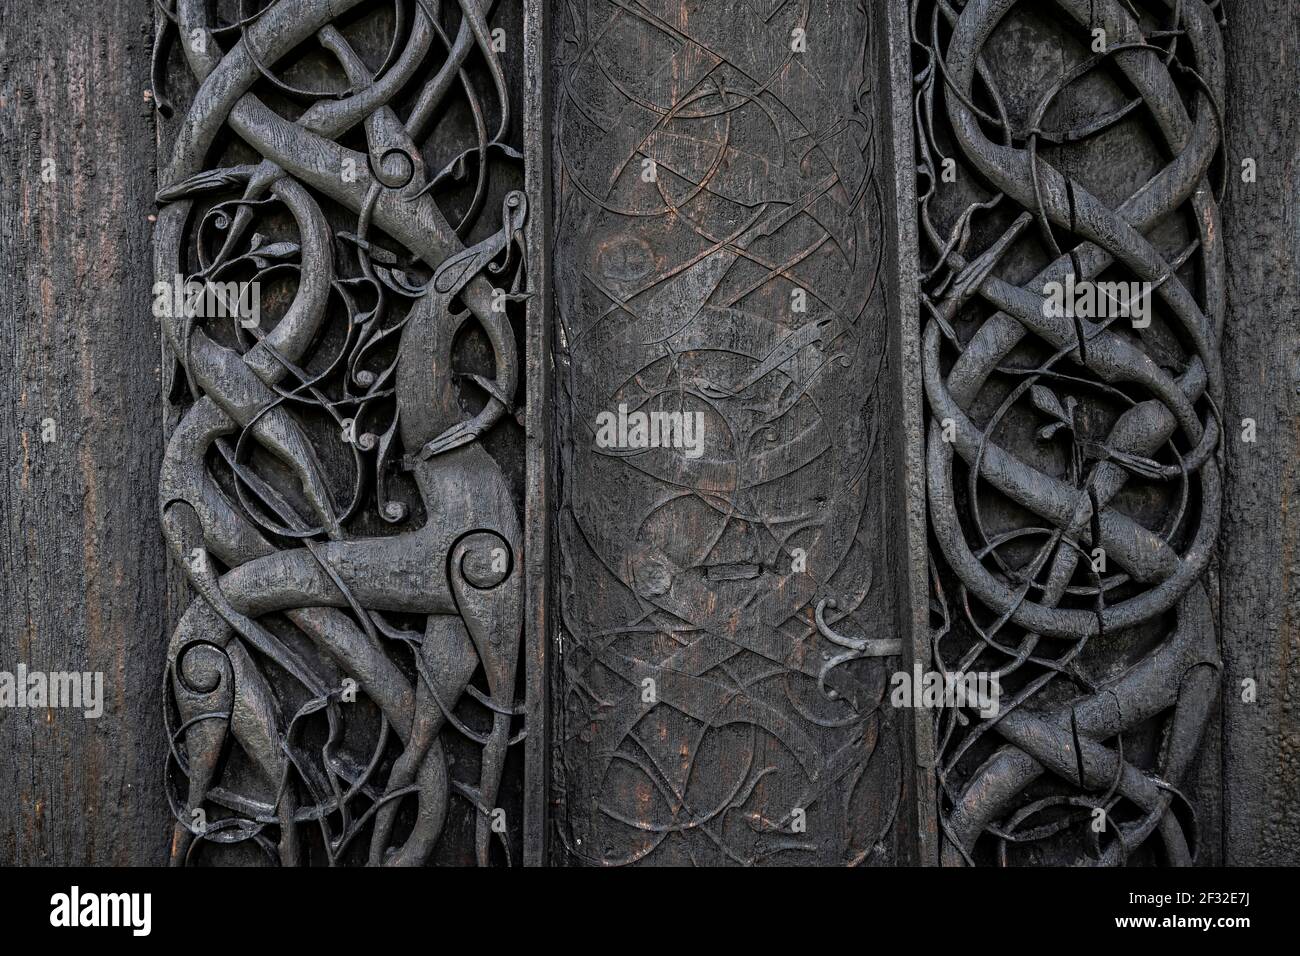 Portail nord sculpté avec art, art celtique avec traditions des Vikings, église Urnes Stave, église romane de CA. 1130, Vestland, Norvège Banque D'Images